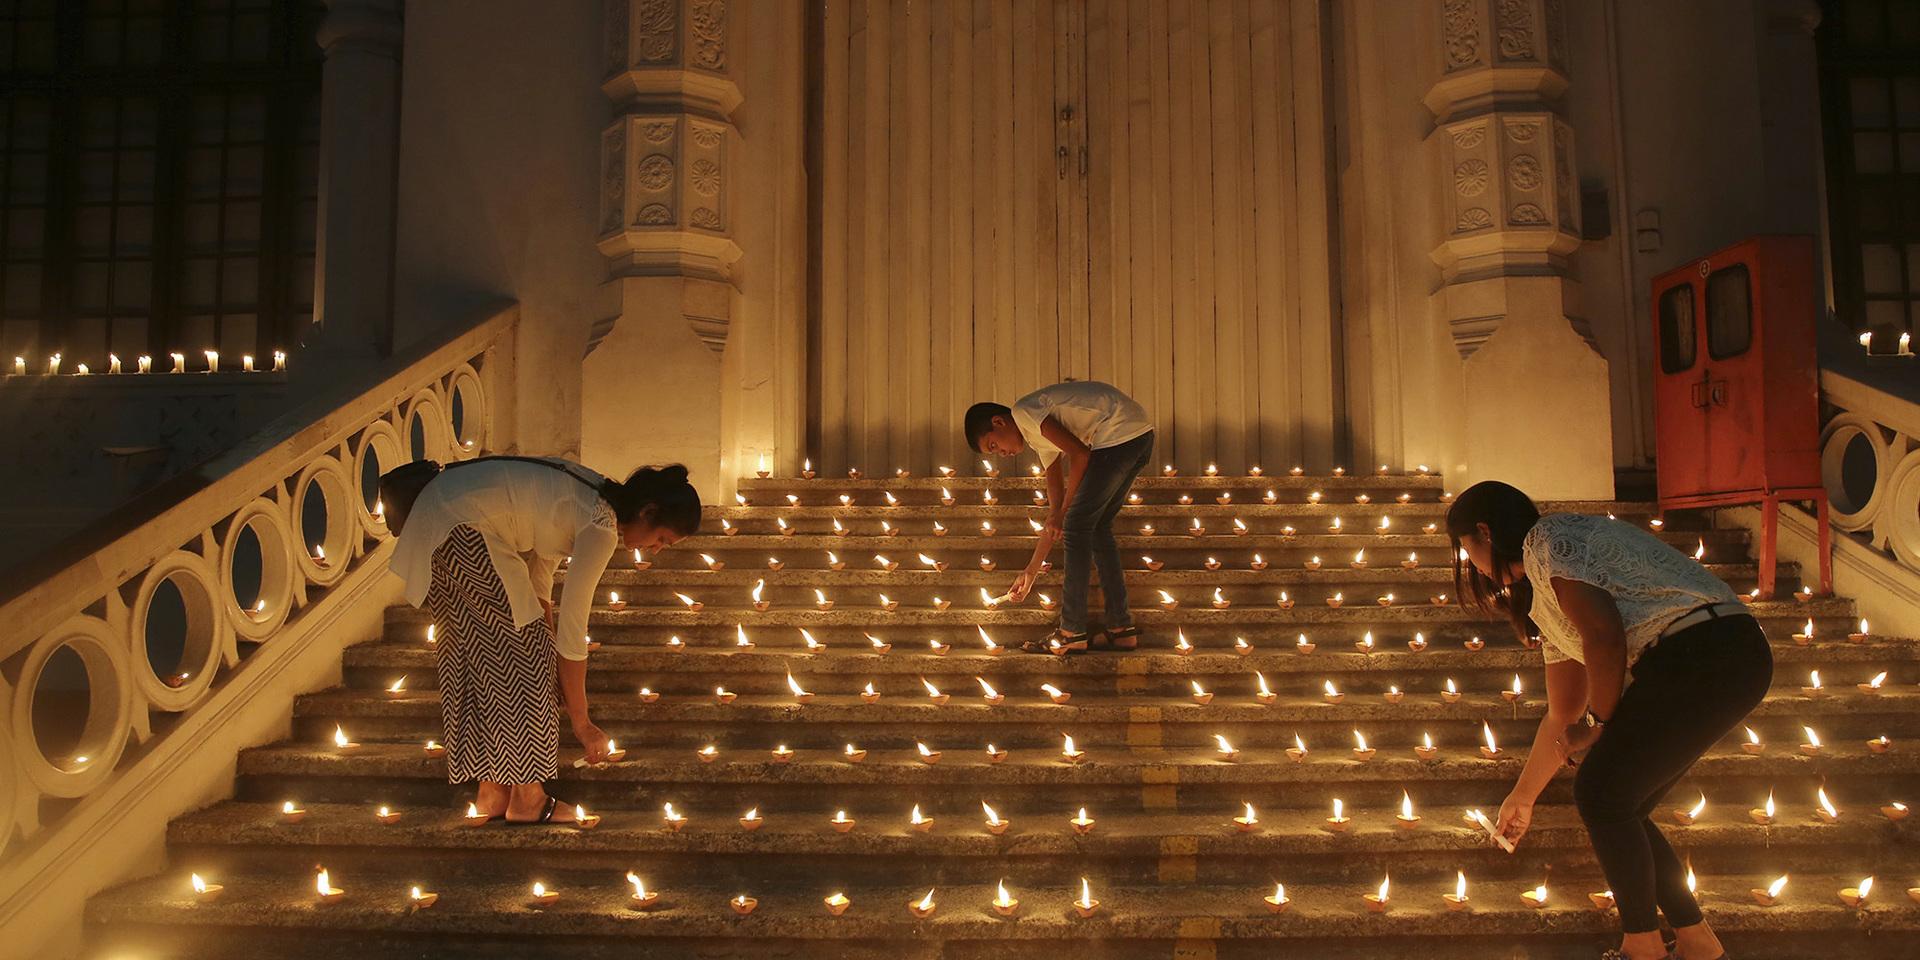 Ljusmanifestation till minne av offren i terrorattentaten i Sri Lanka. 